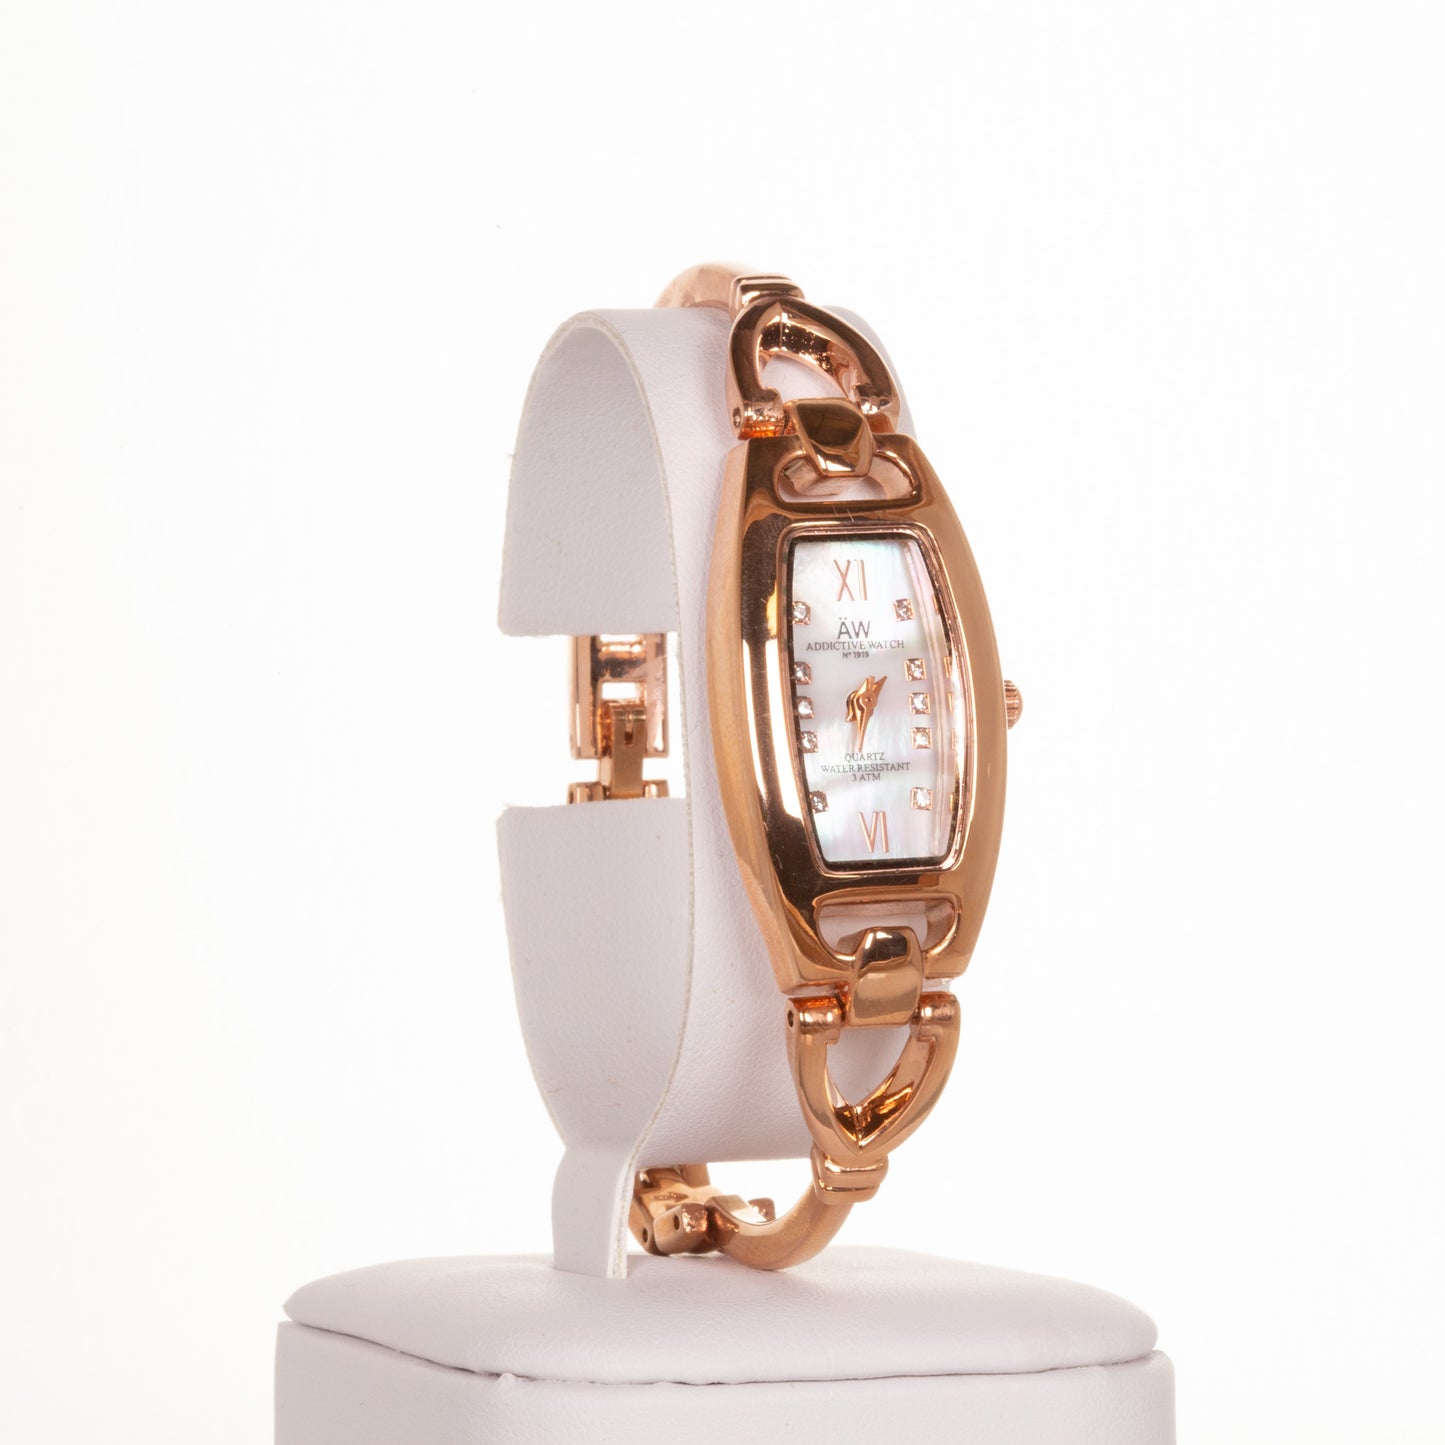 AW damski zegarek ze stopu metali w kolorze różowego złota z cienkim trójkątnym paskiem i kryształkami kwarcu